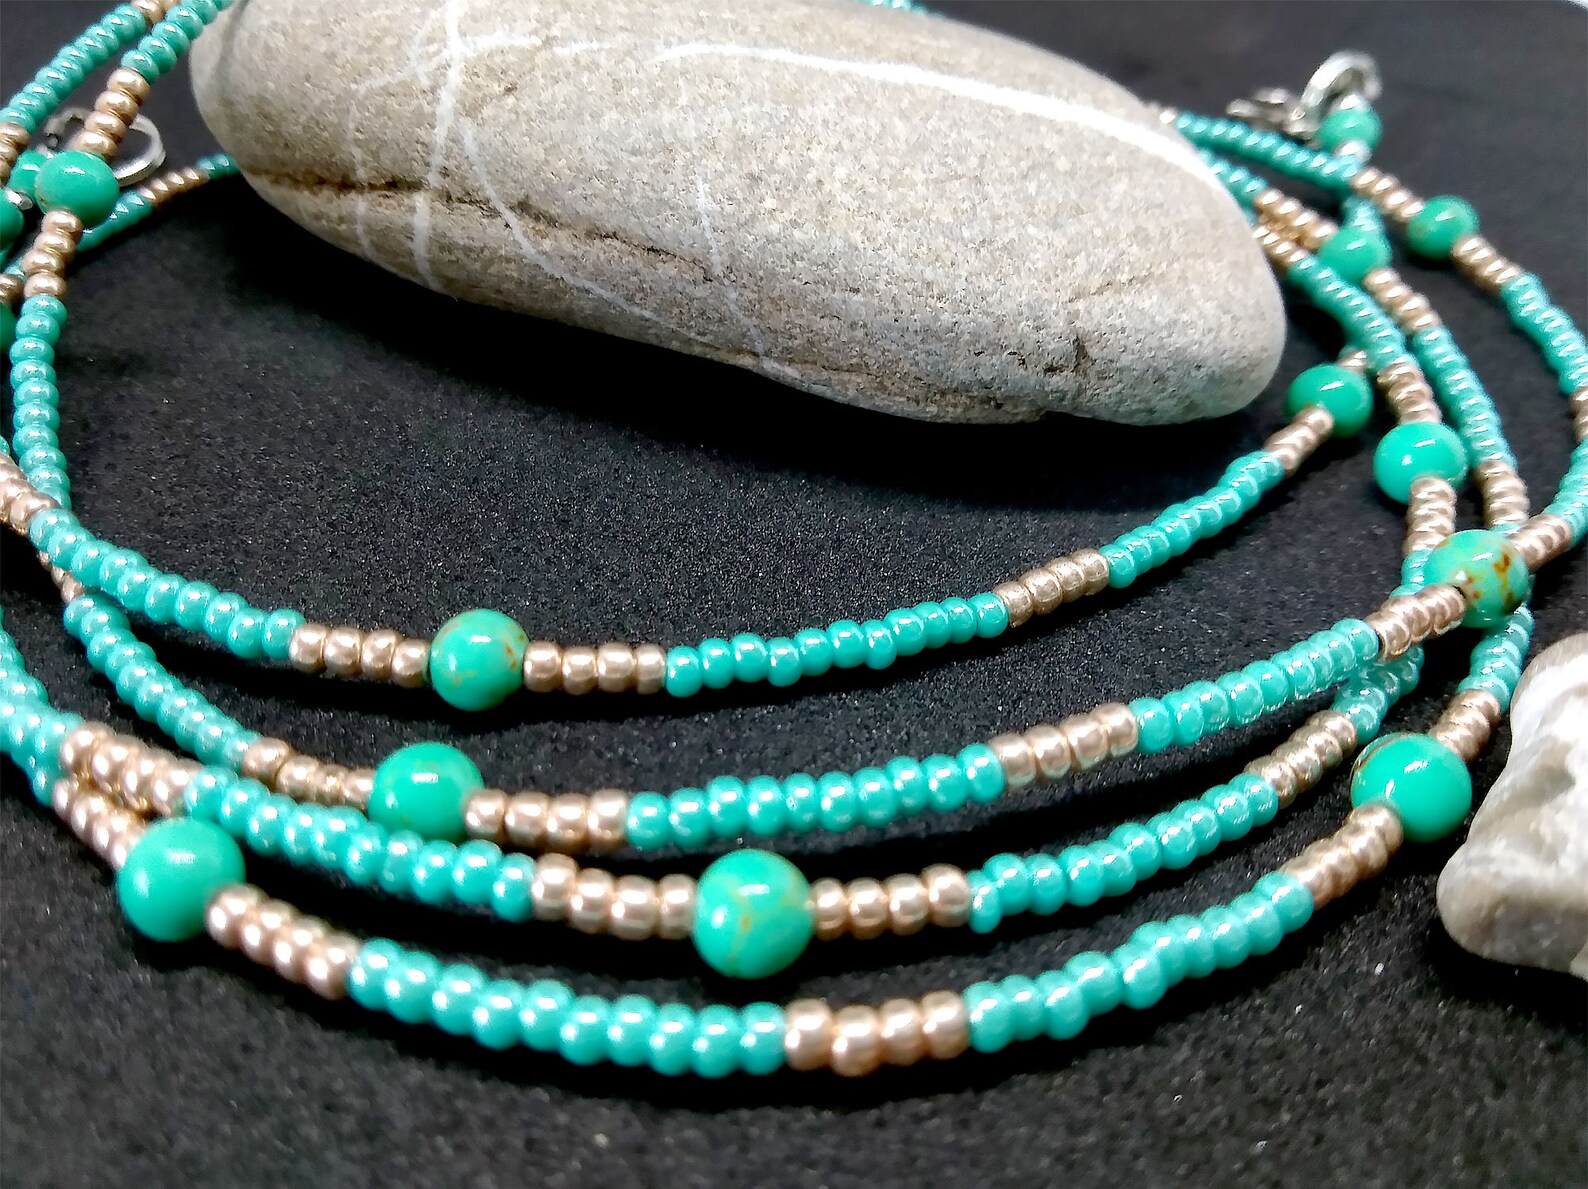 Bulk waist beads waist bead set wholesale African waist beads | Etsy